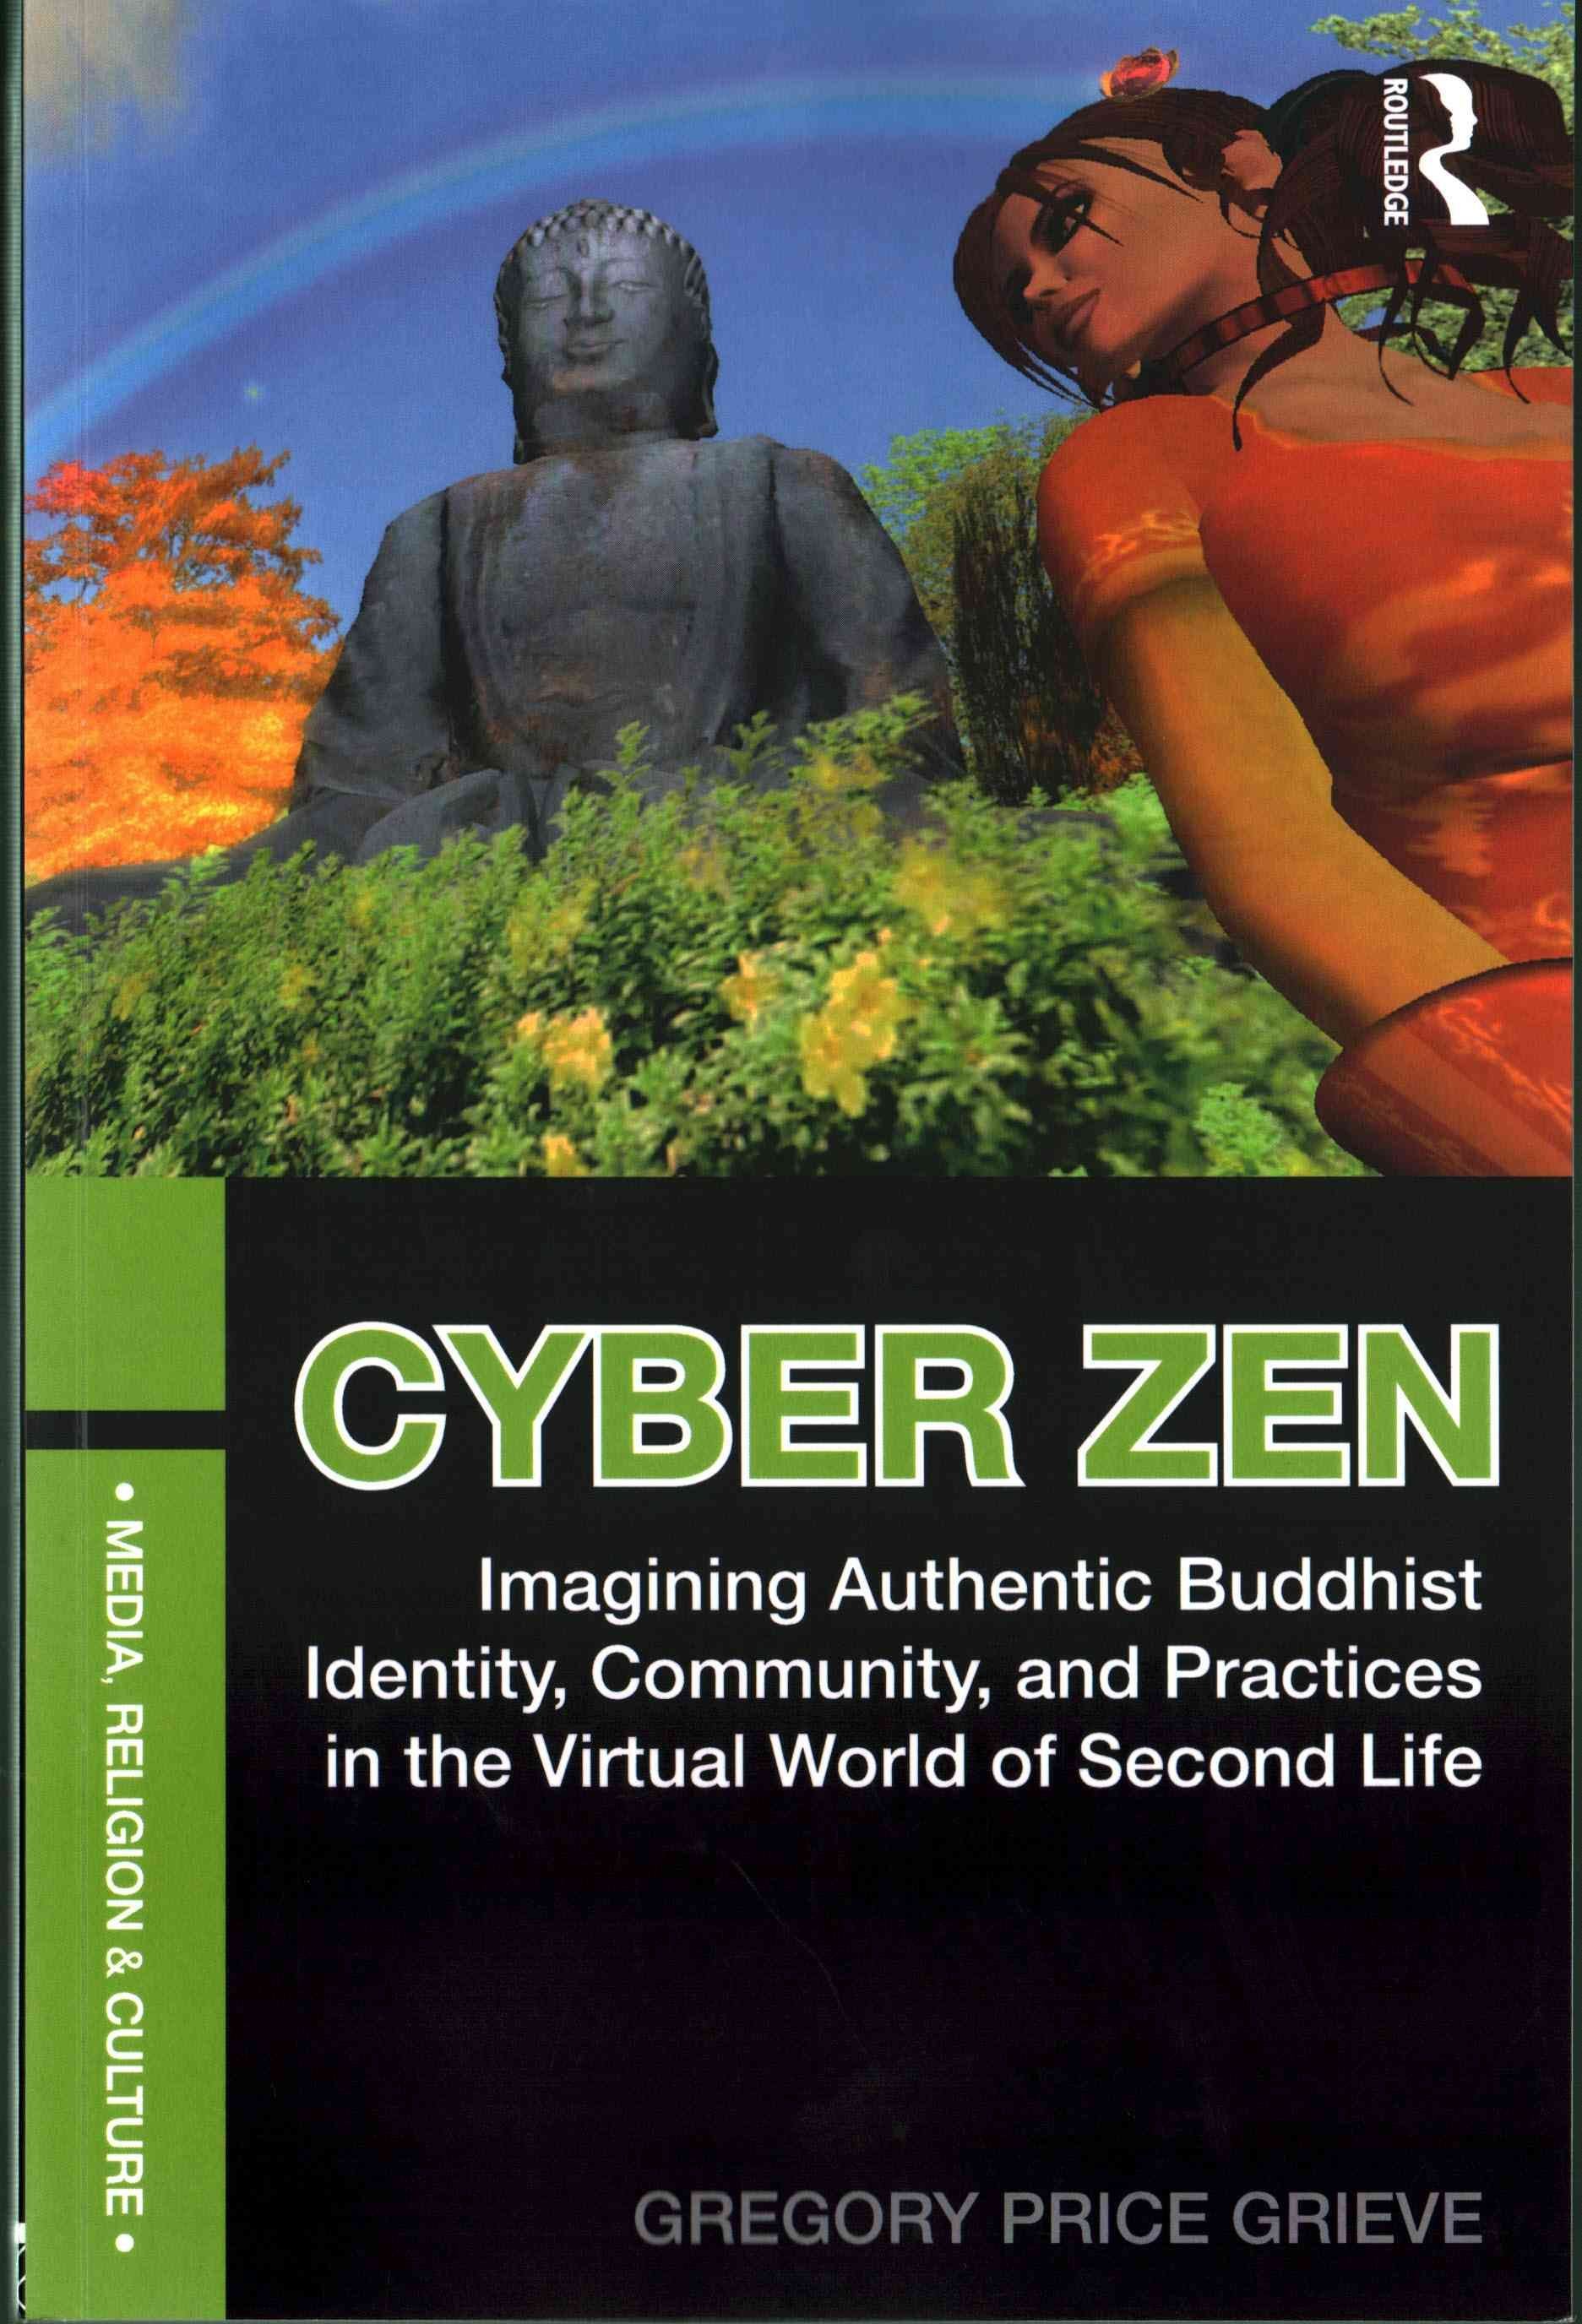 Cyber Zen